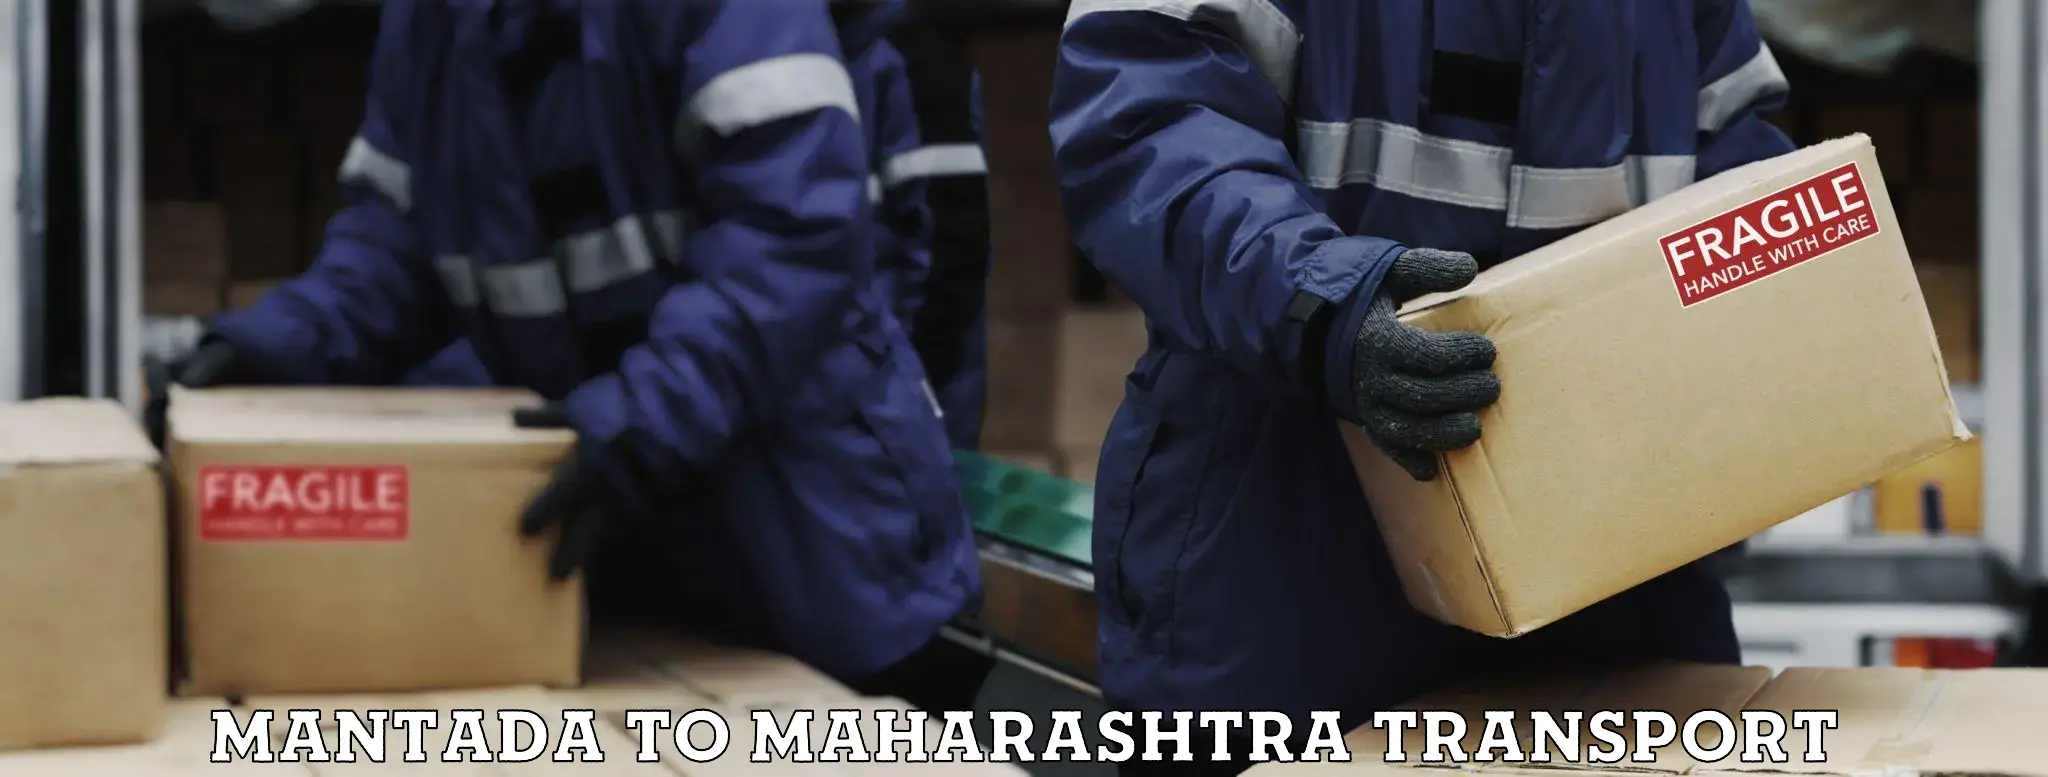 Two wheeler parcel service Mantada to Maharashtra